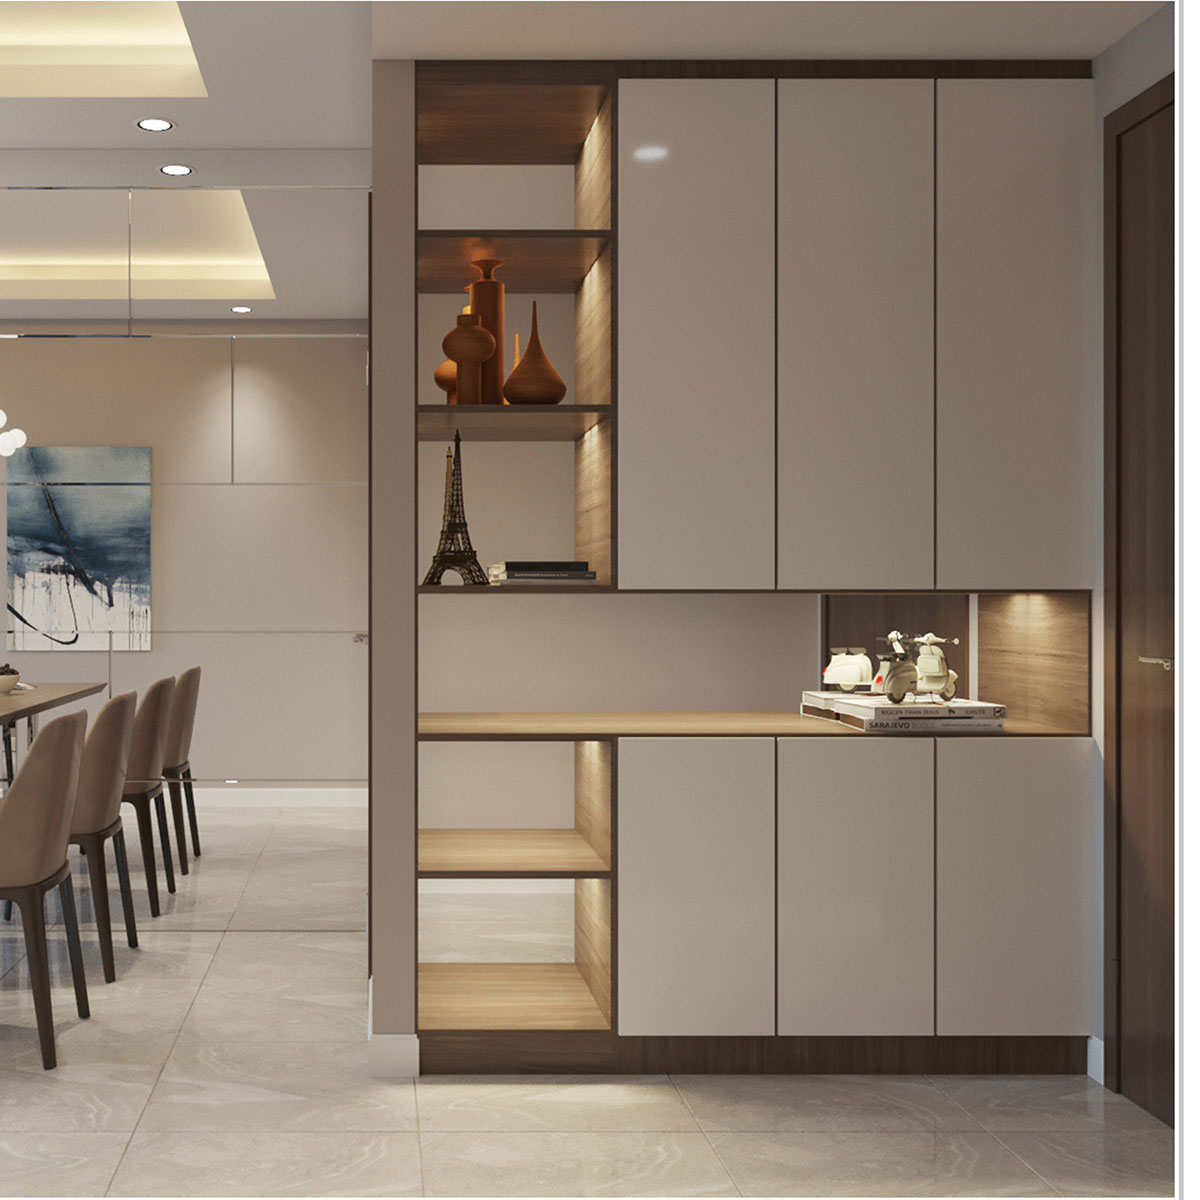 Tư vấn thiết kế nội thất căn hộ chung cư bị xuống cấp có diện tích 104m² với chi phí 210 triệu - Ảnh 3.